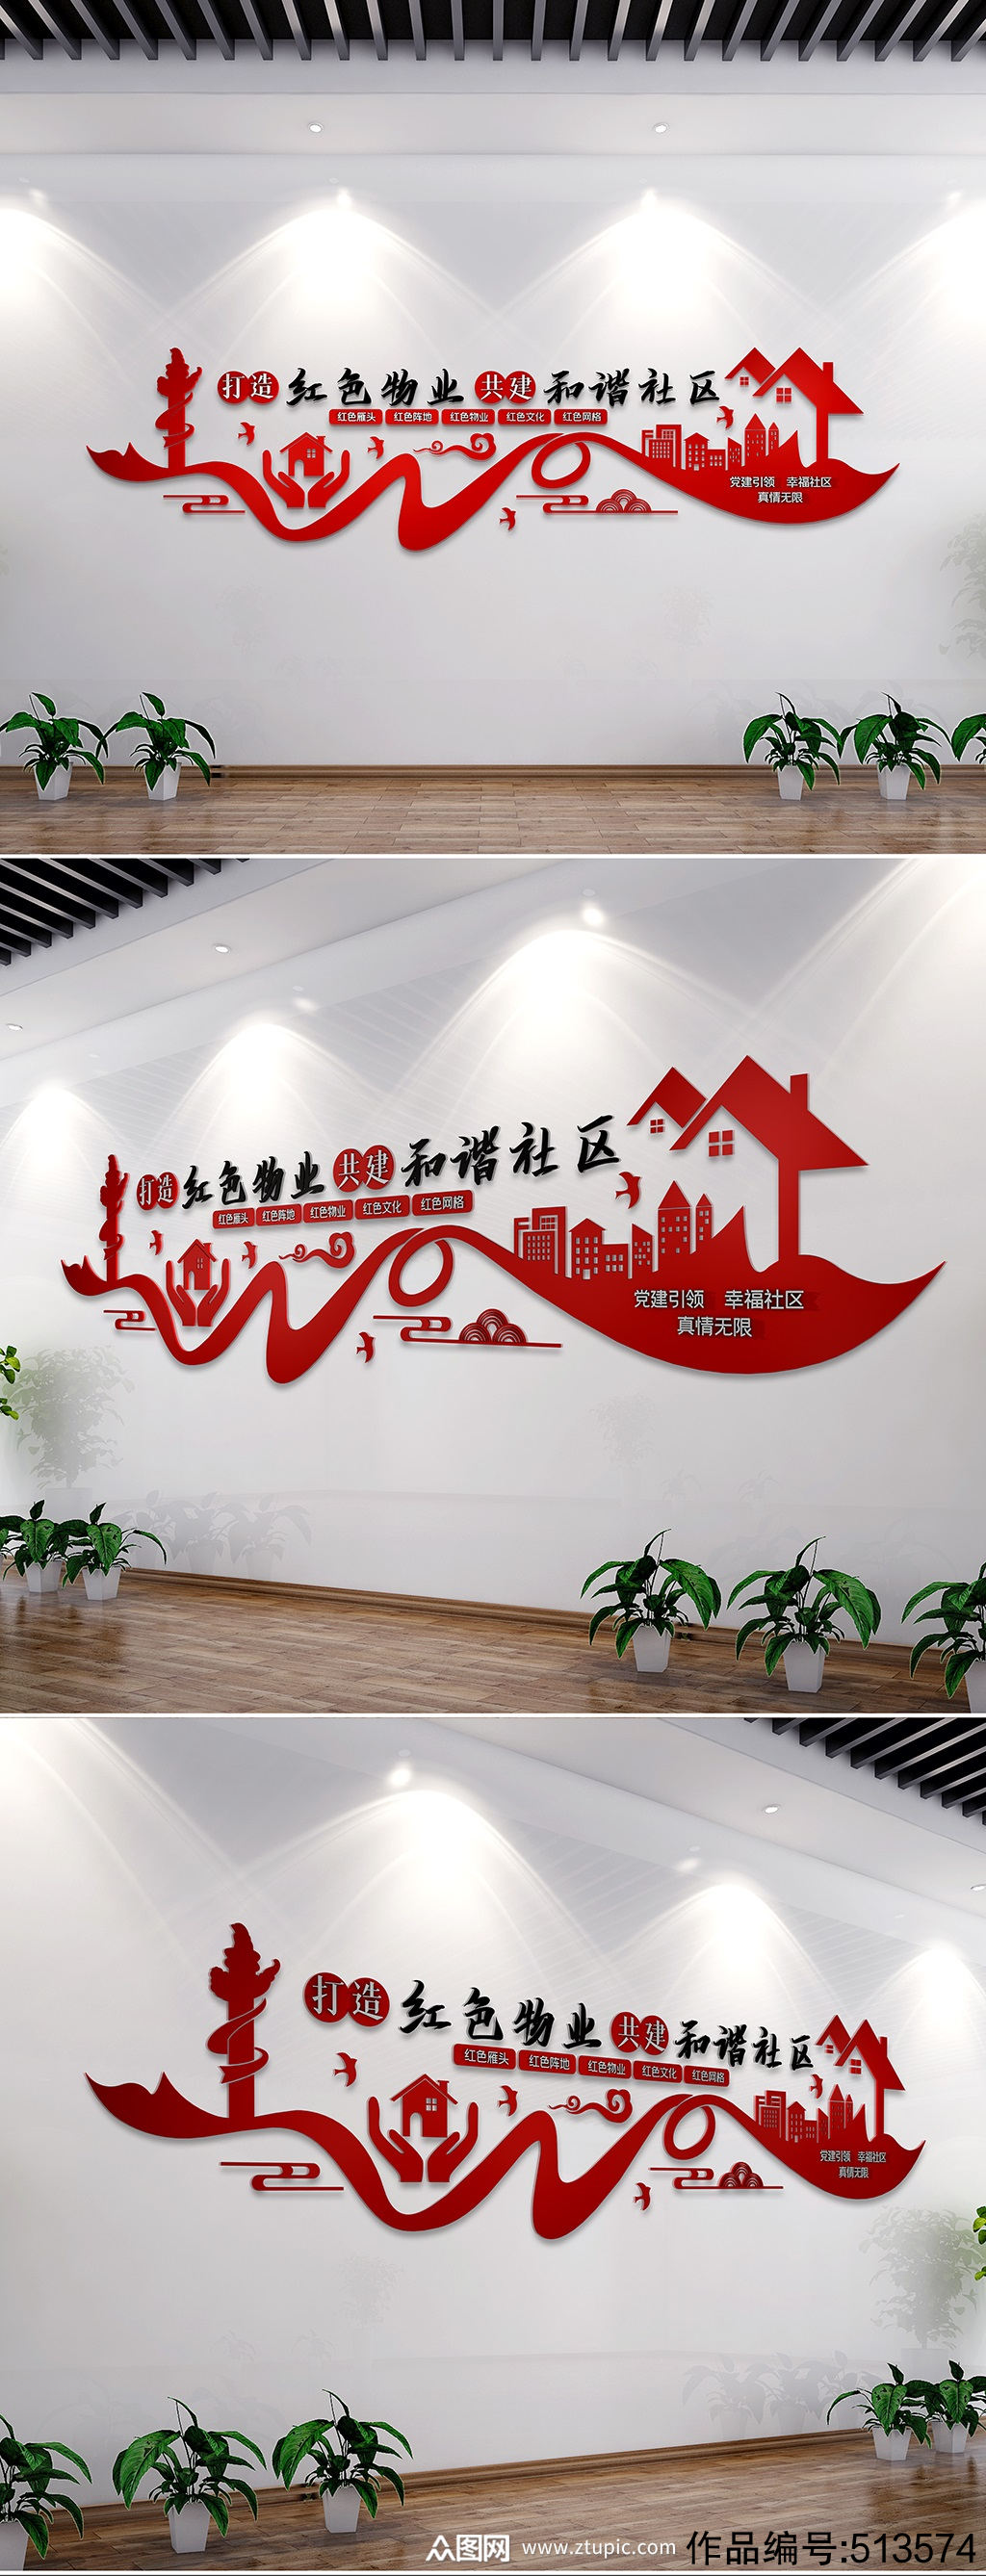 社区红色物业文化墙创意设计